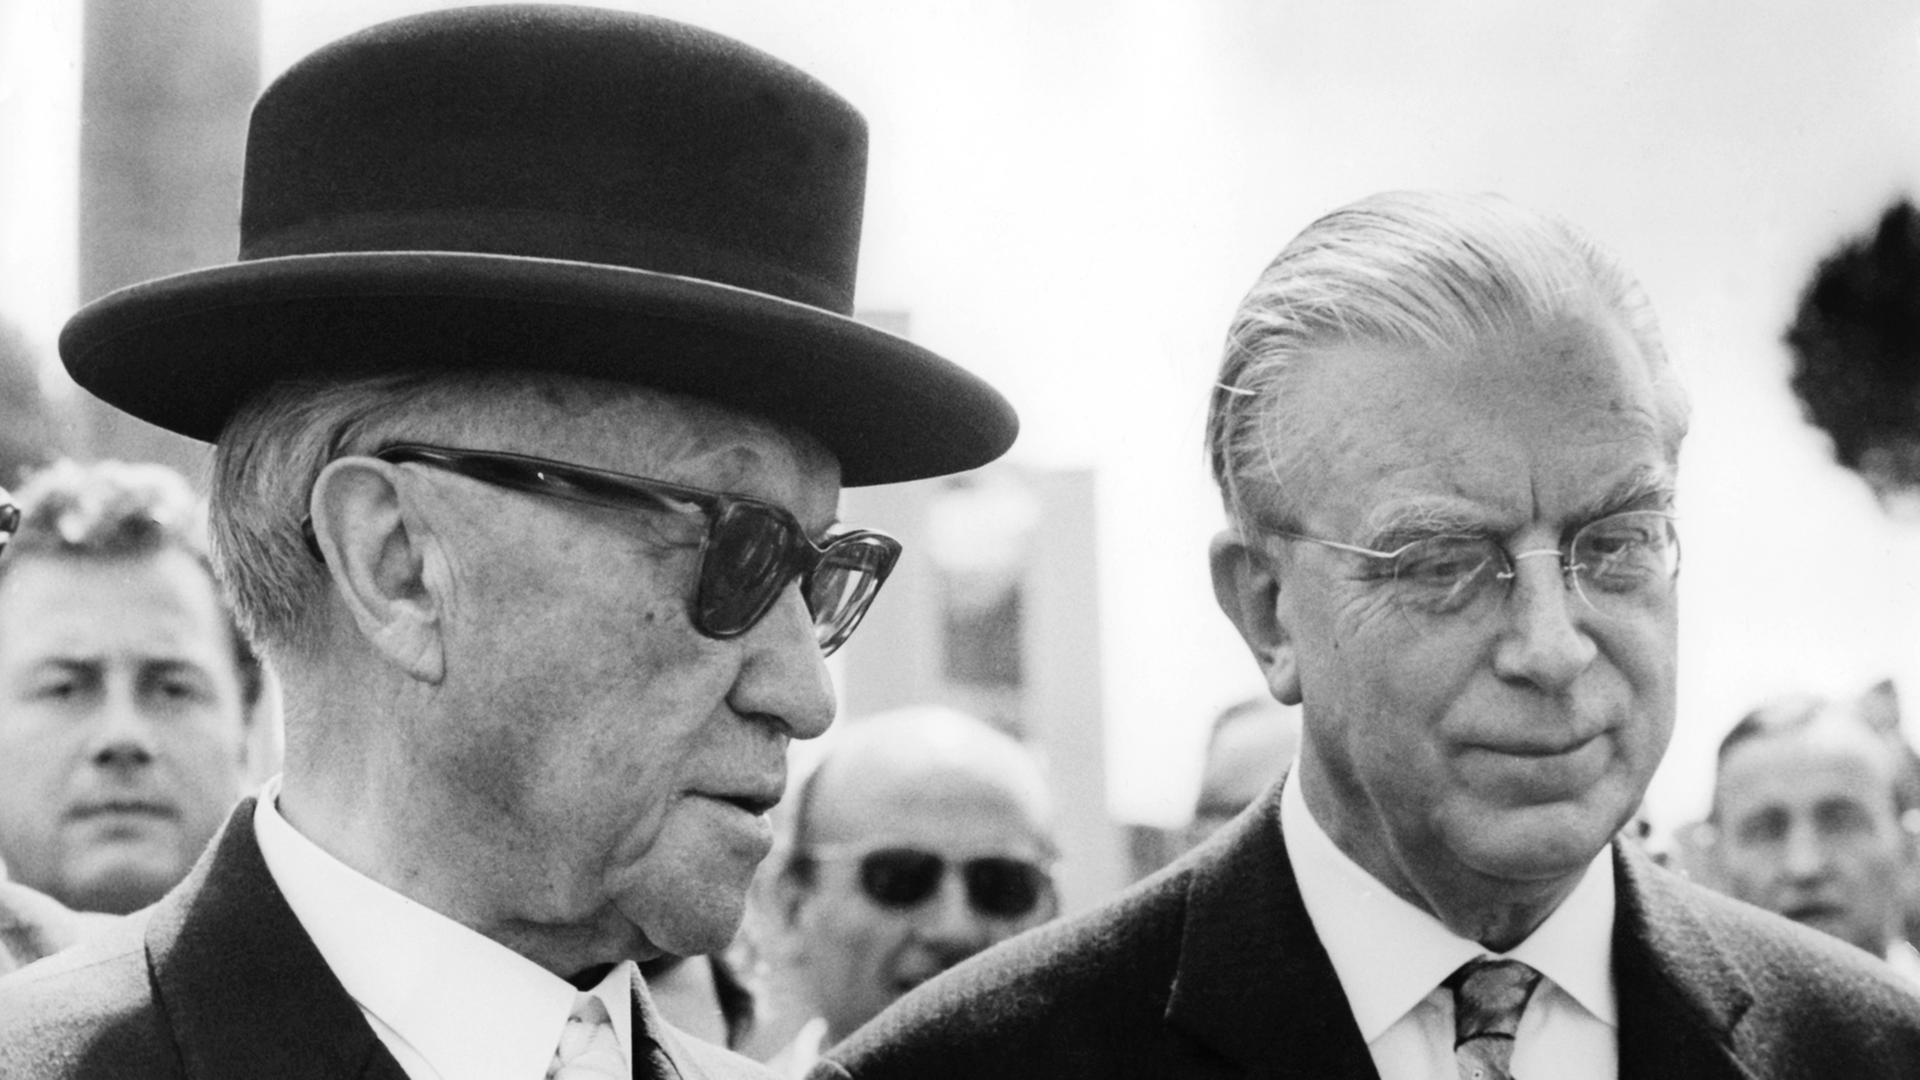 Kanzler Konrad Adenauer trägt eine Sonnenbrille und einen schwarzen Hut, rechts neben ihm steht Kanzleramtschef Hans Globke